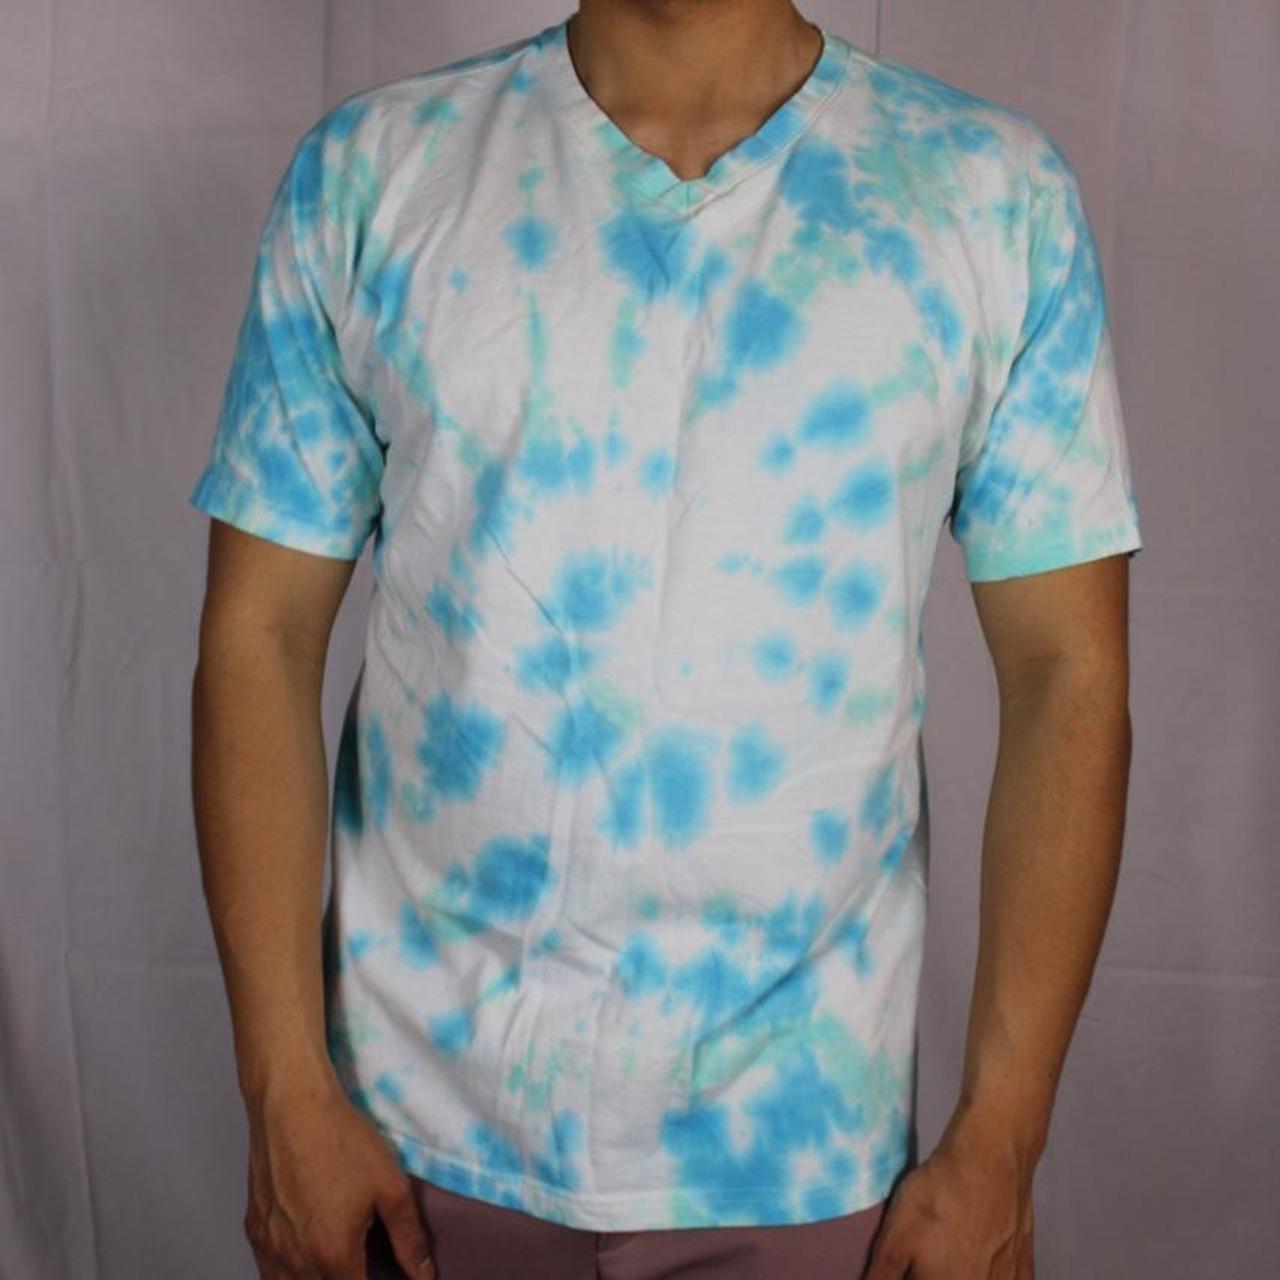 Product Image 1 - Tye dye shirt size medium